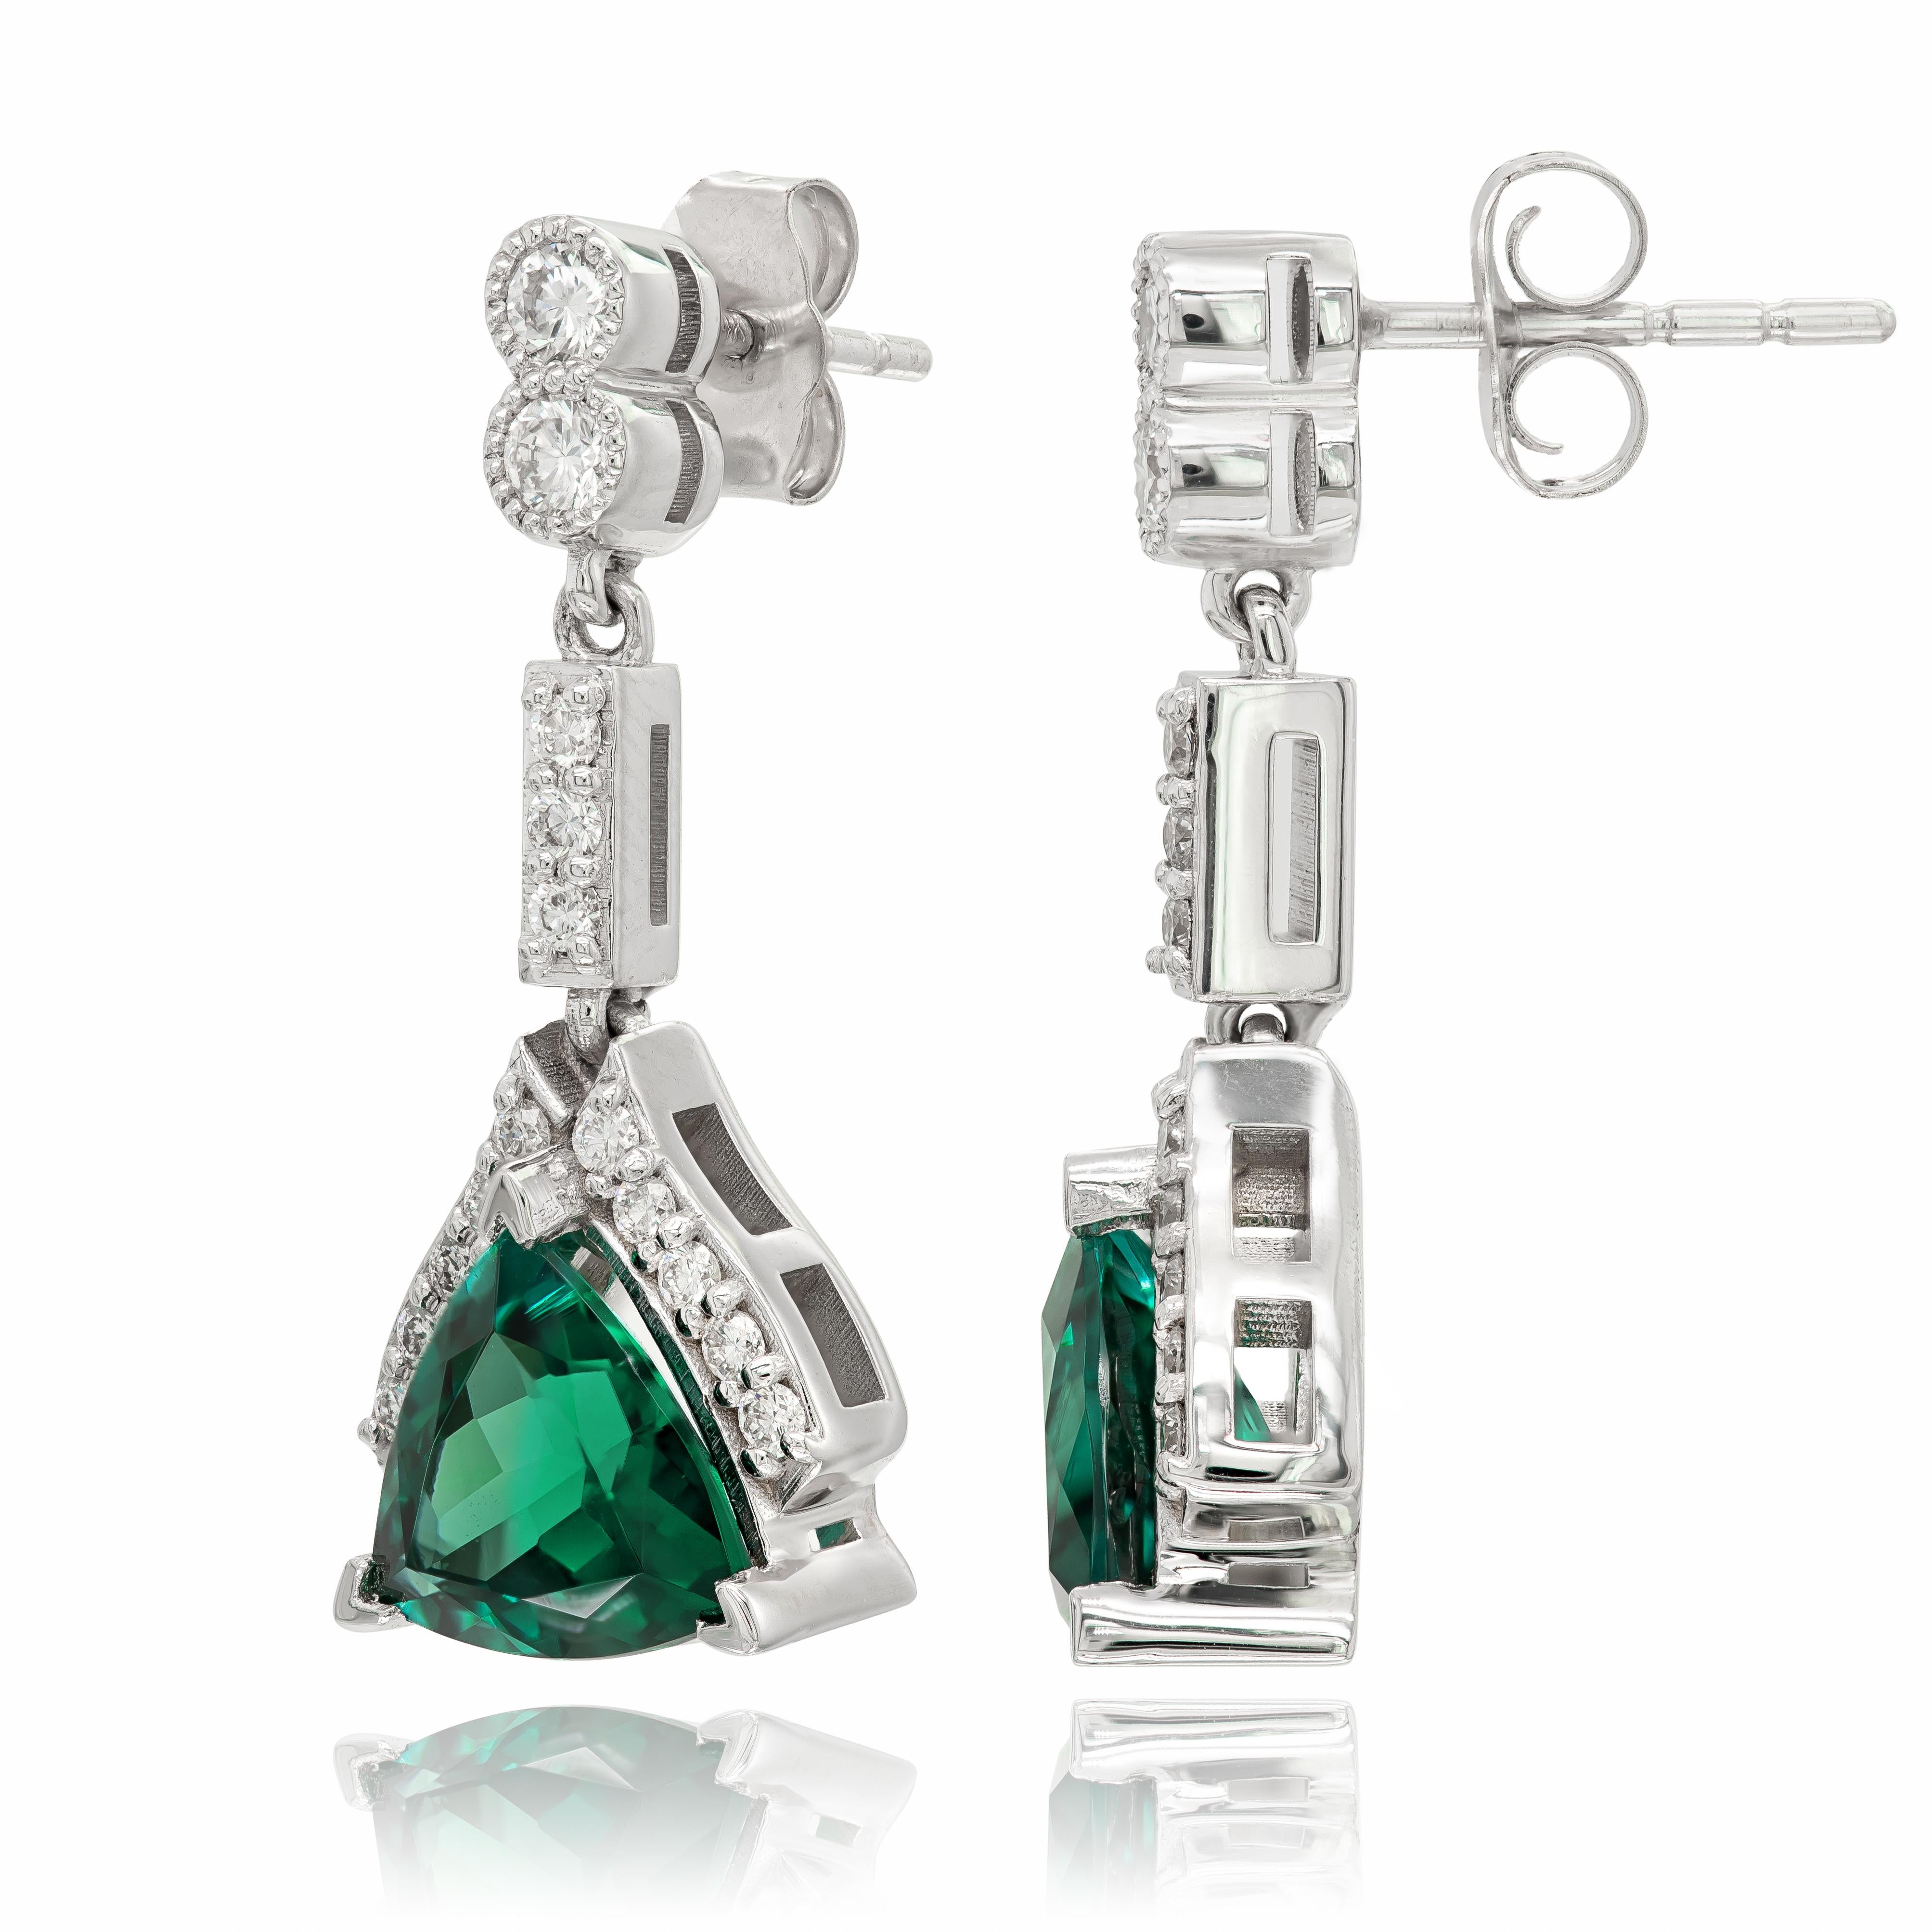 Unsere bezaubernden blau-grünen Turmalin-Ohrringe sind eine harmonische Kombination aus 2,89 Karat faszinierenden Edelsteinen und einer wunderschön strukturierten Fassung aus 14 Karat Weißgold. Der Glanz der Steine auf dem schimmernden Edelmetall